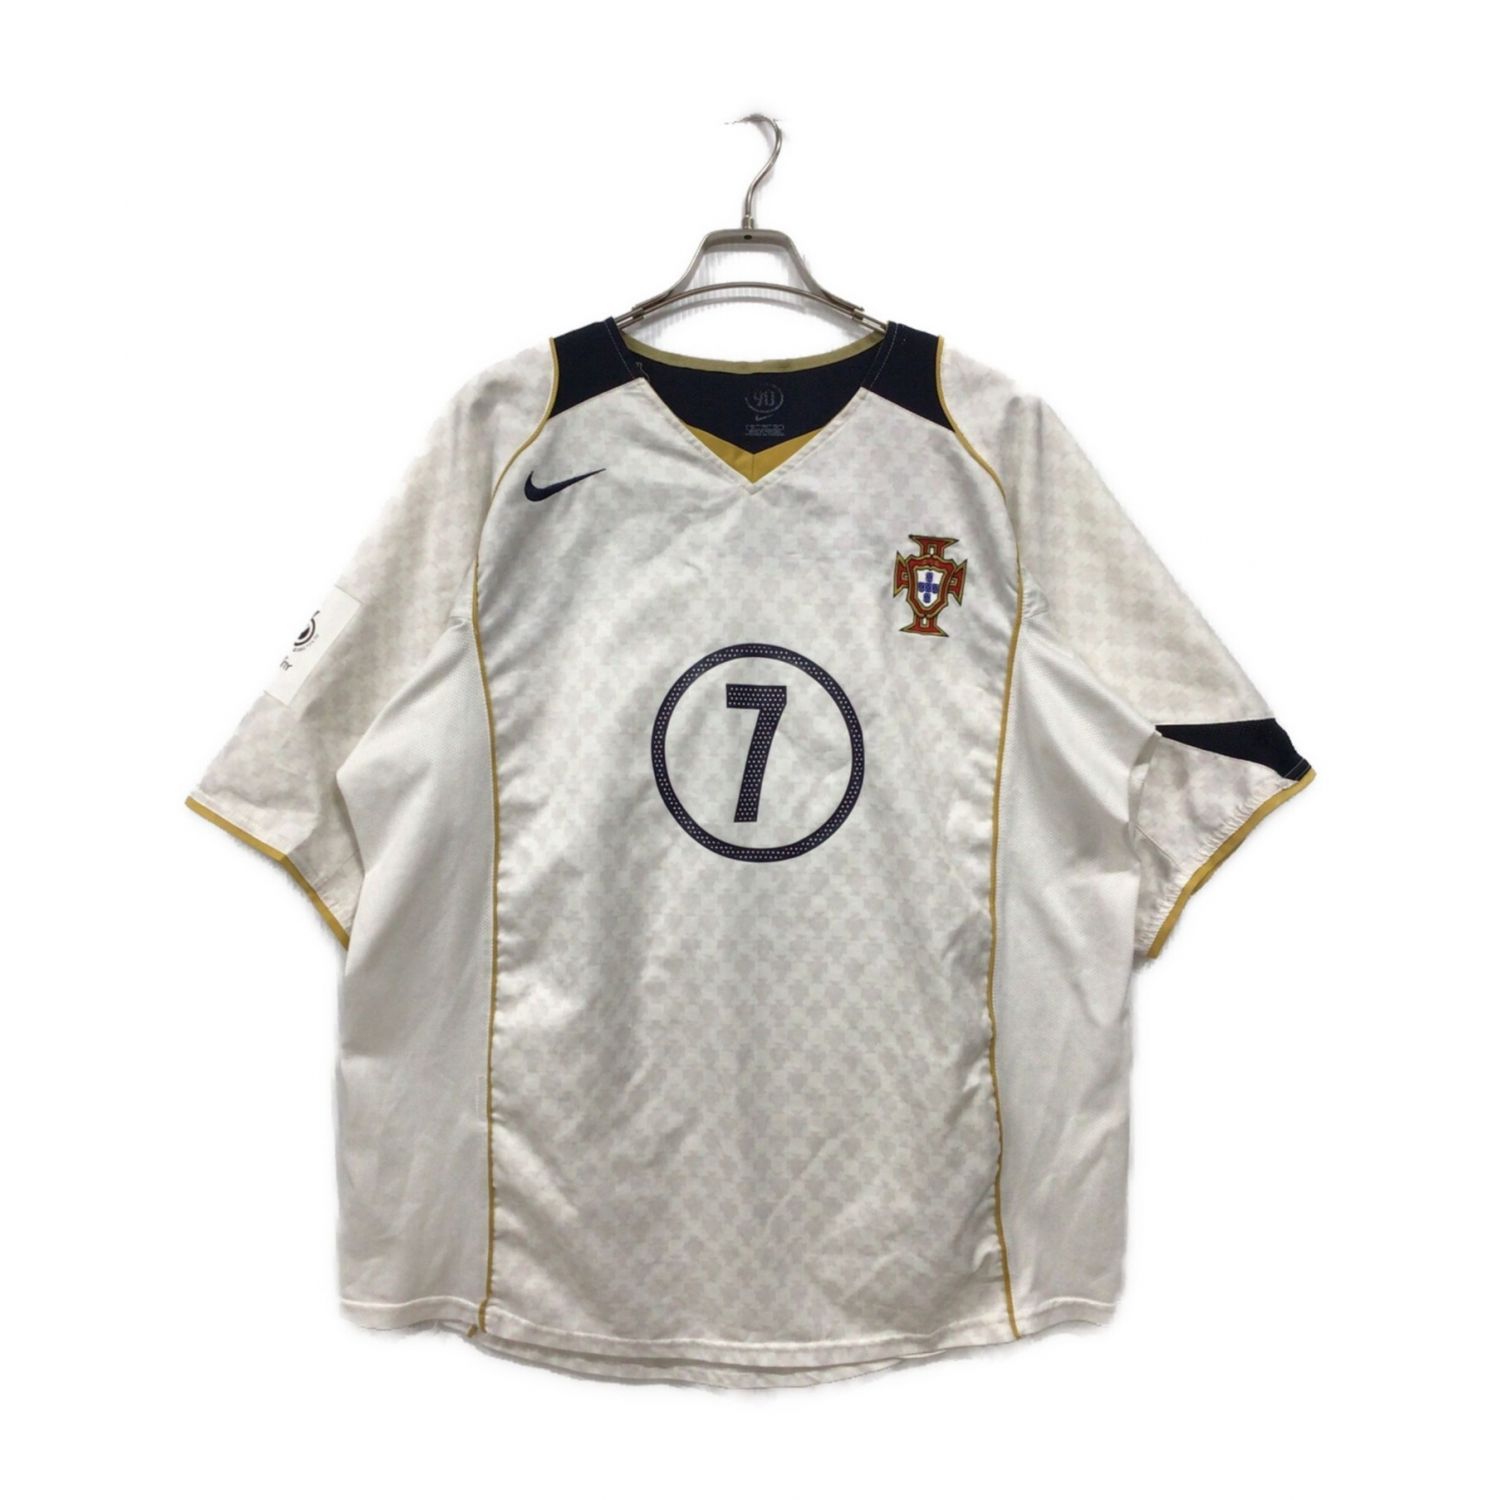 ポルトガル代表 サッカーユニフォーム【7】ルイスフィーゴ 2004年